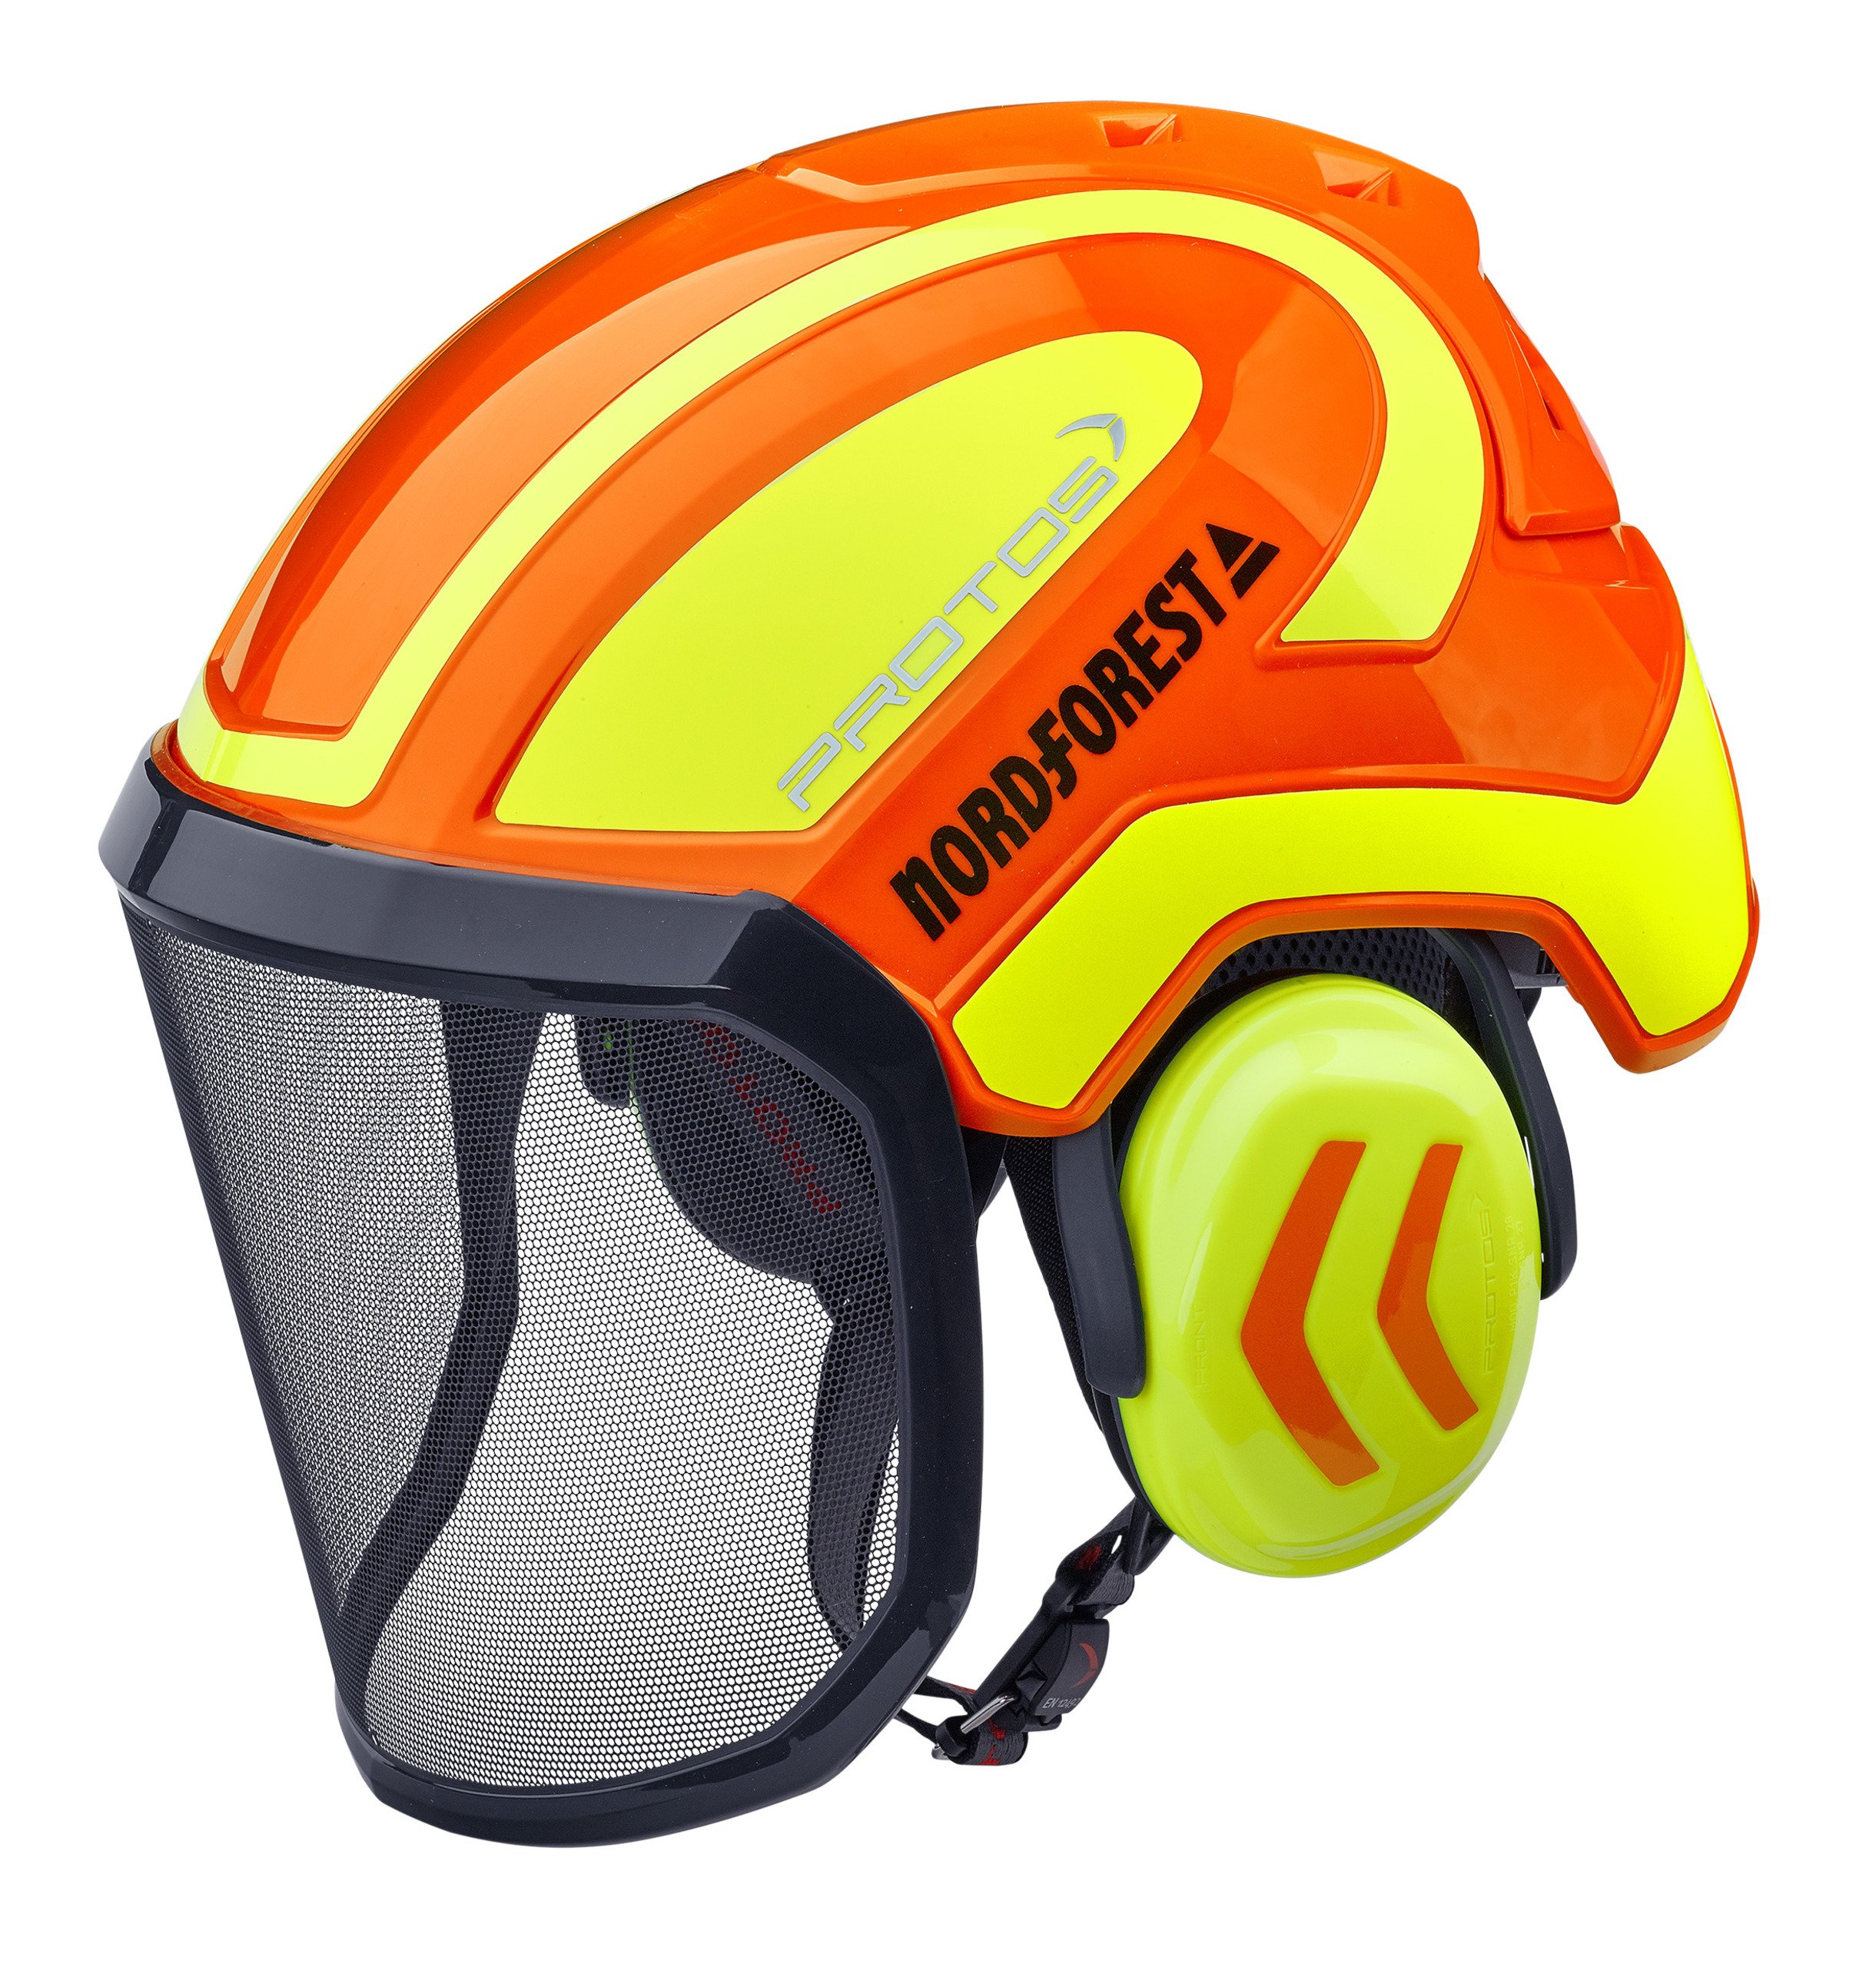 Combinazione di protezione della testa Protos Integral Arborist gel  arancione-neon, Caschi accessori, Caschi & Co, Abbigliamento forestale e  da lavoro